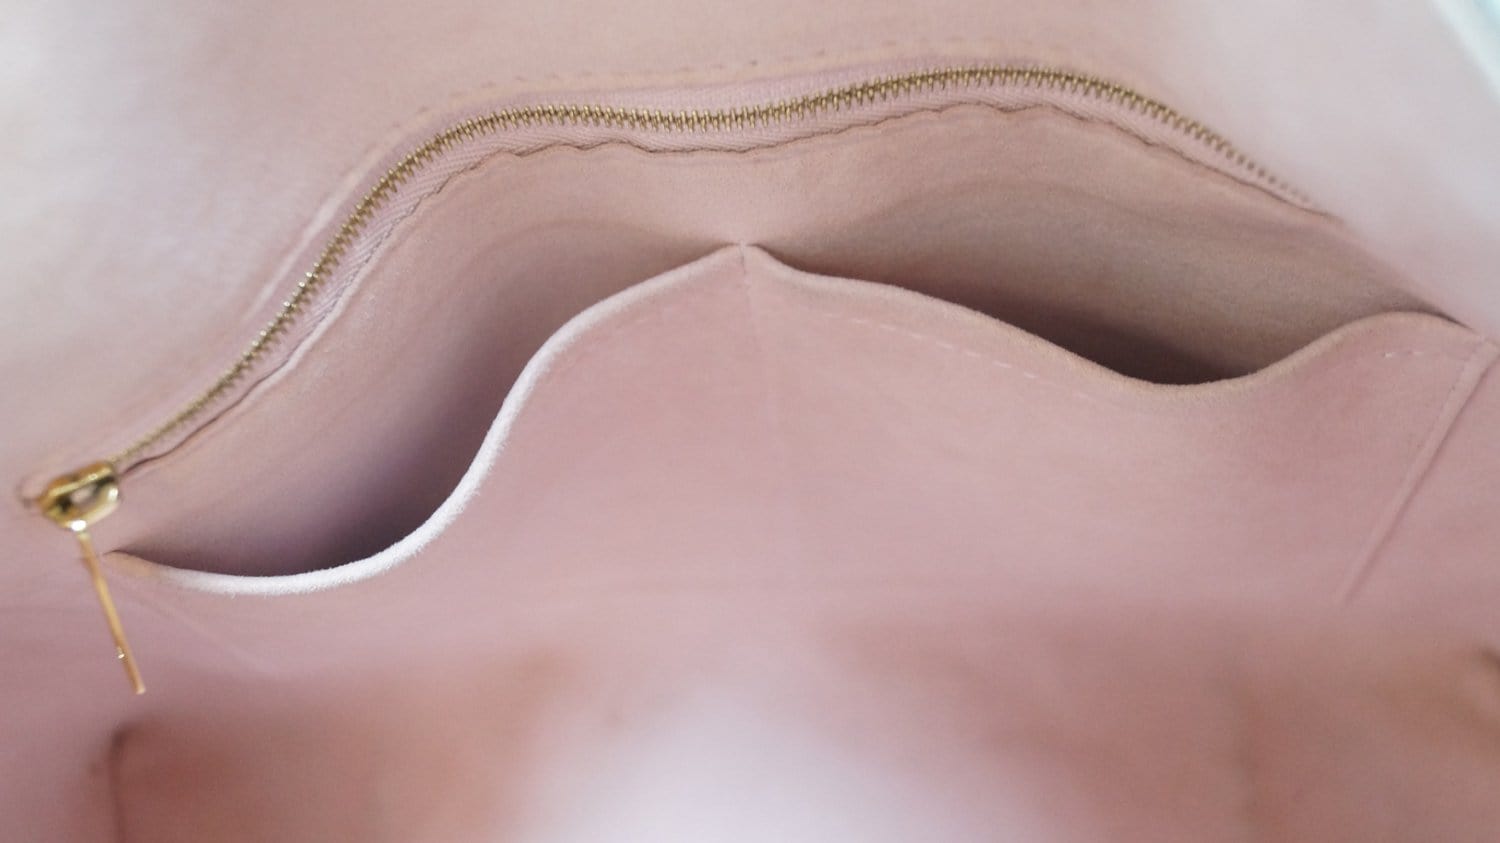 Beautiful Louis Vuitton Caissa Hobo Bag 💖 Retail $1960 ADORE